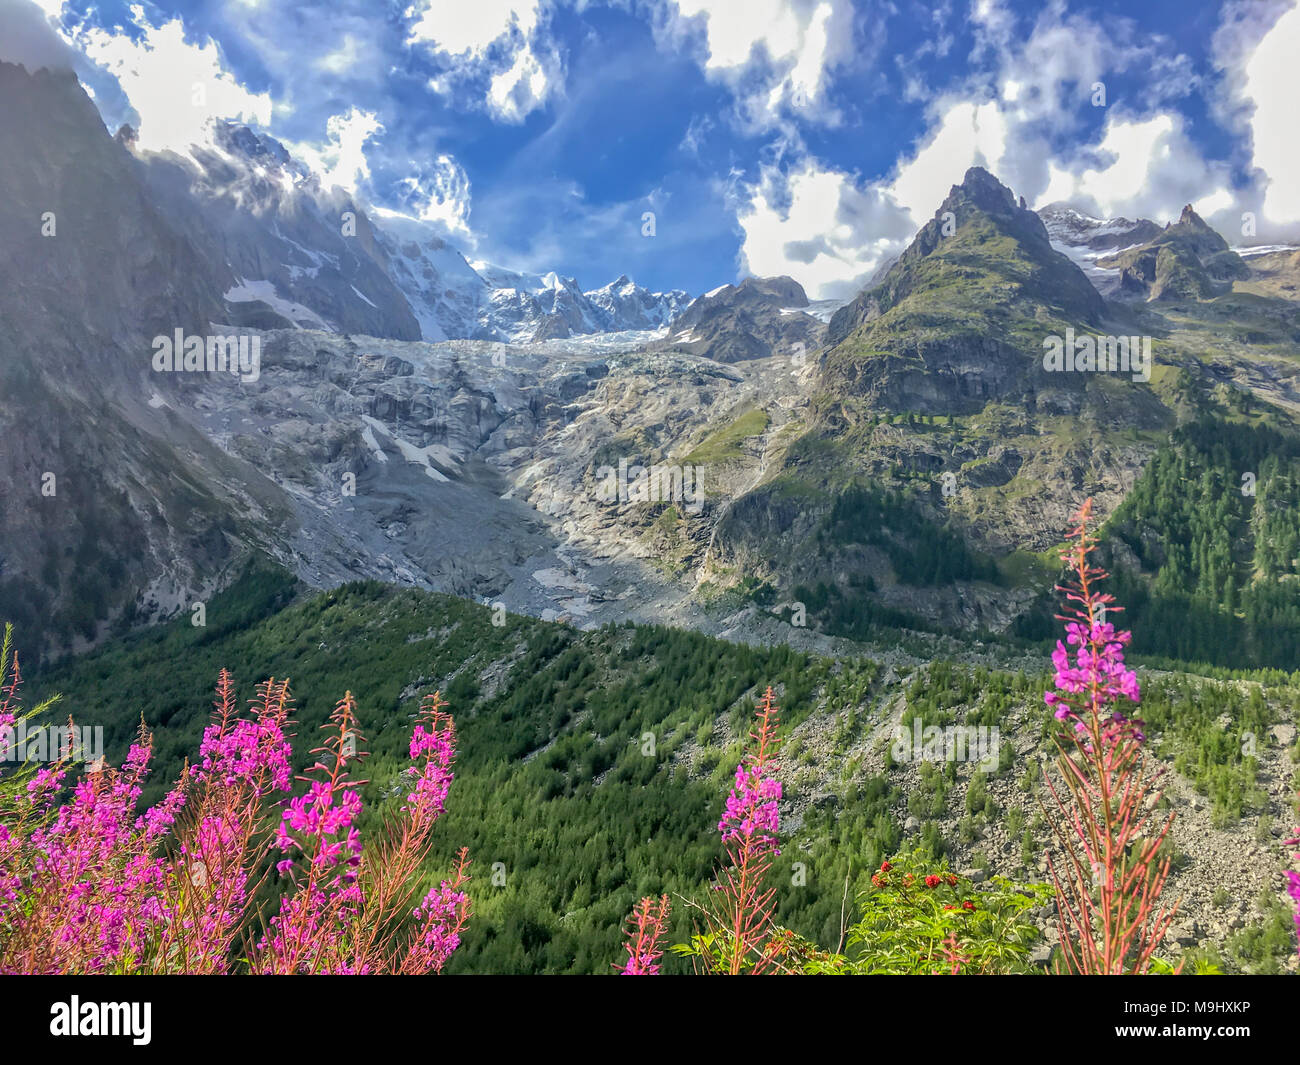 Glacier de Miage, rose fireweeds, vallée d'aoste, Italie Banque D'Images